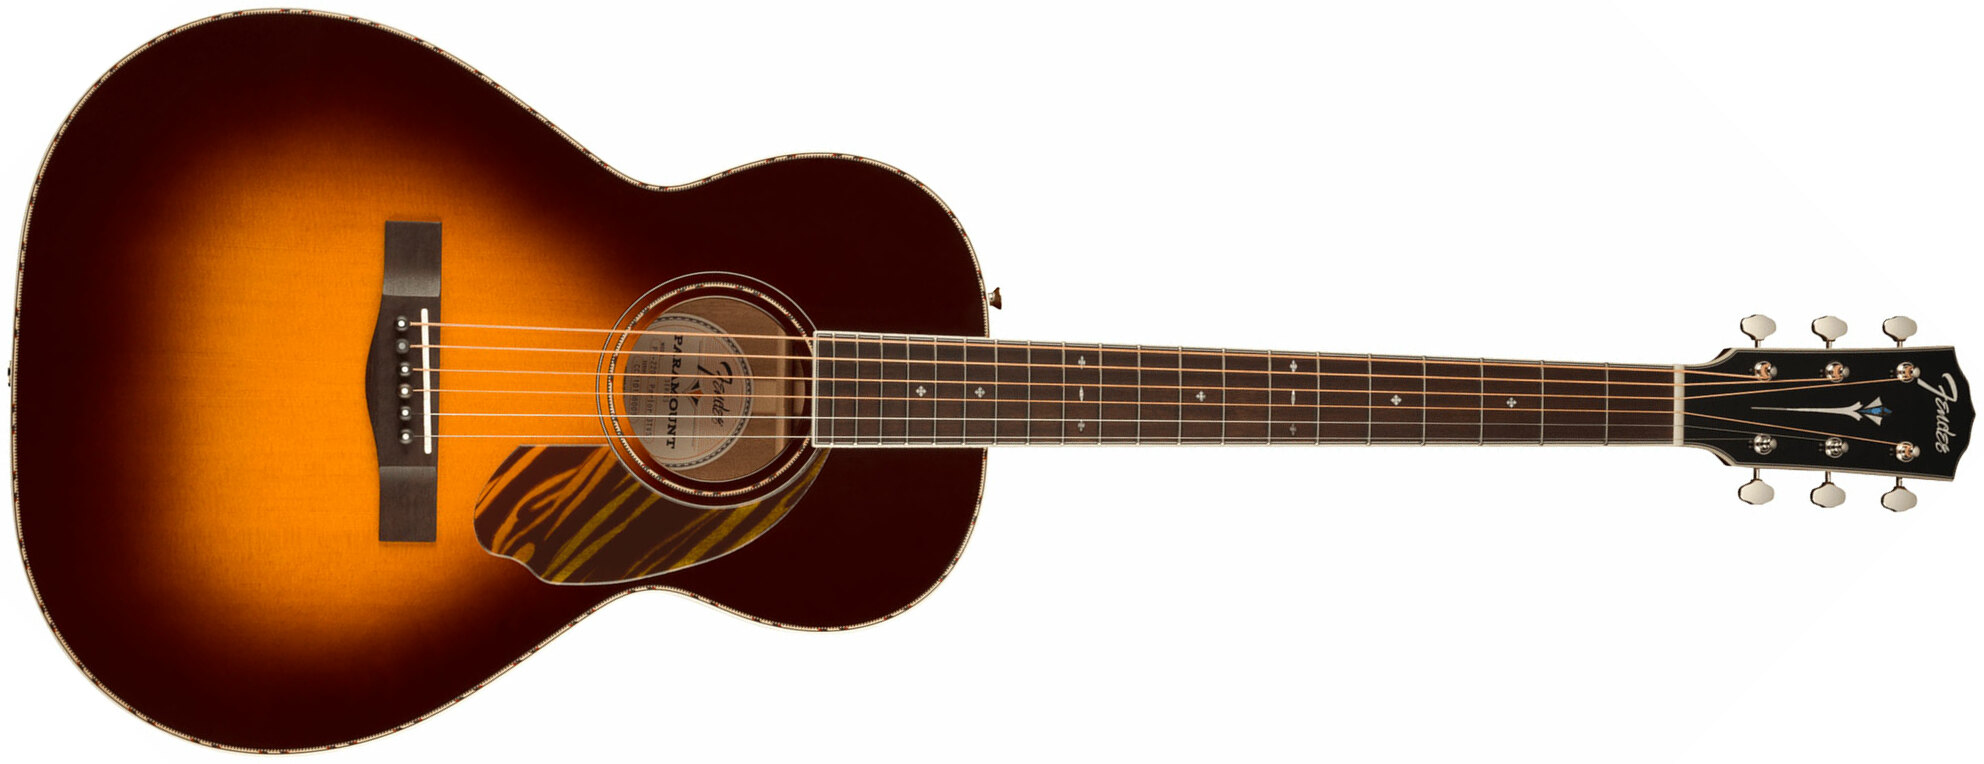 Fender Ps-220e Paramount Parlor Epicea Acajou Ova - 3-color Vintage Sunburst - Electro acoustic guitar - Main picture